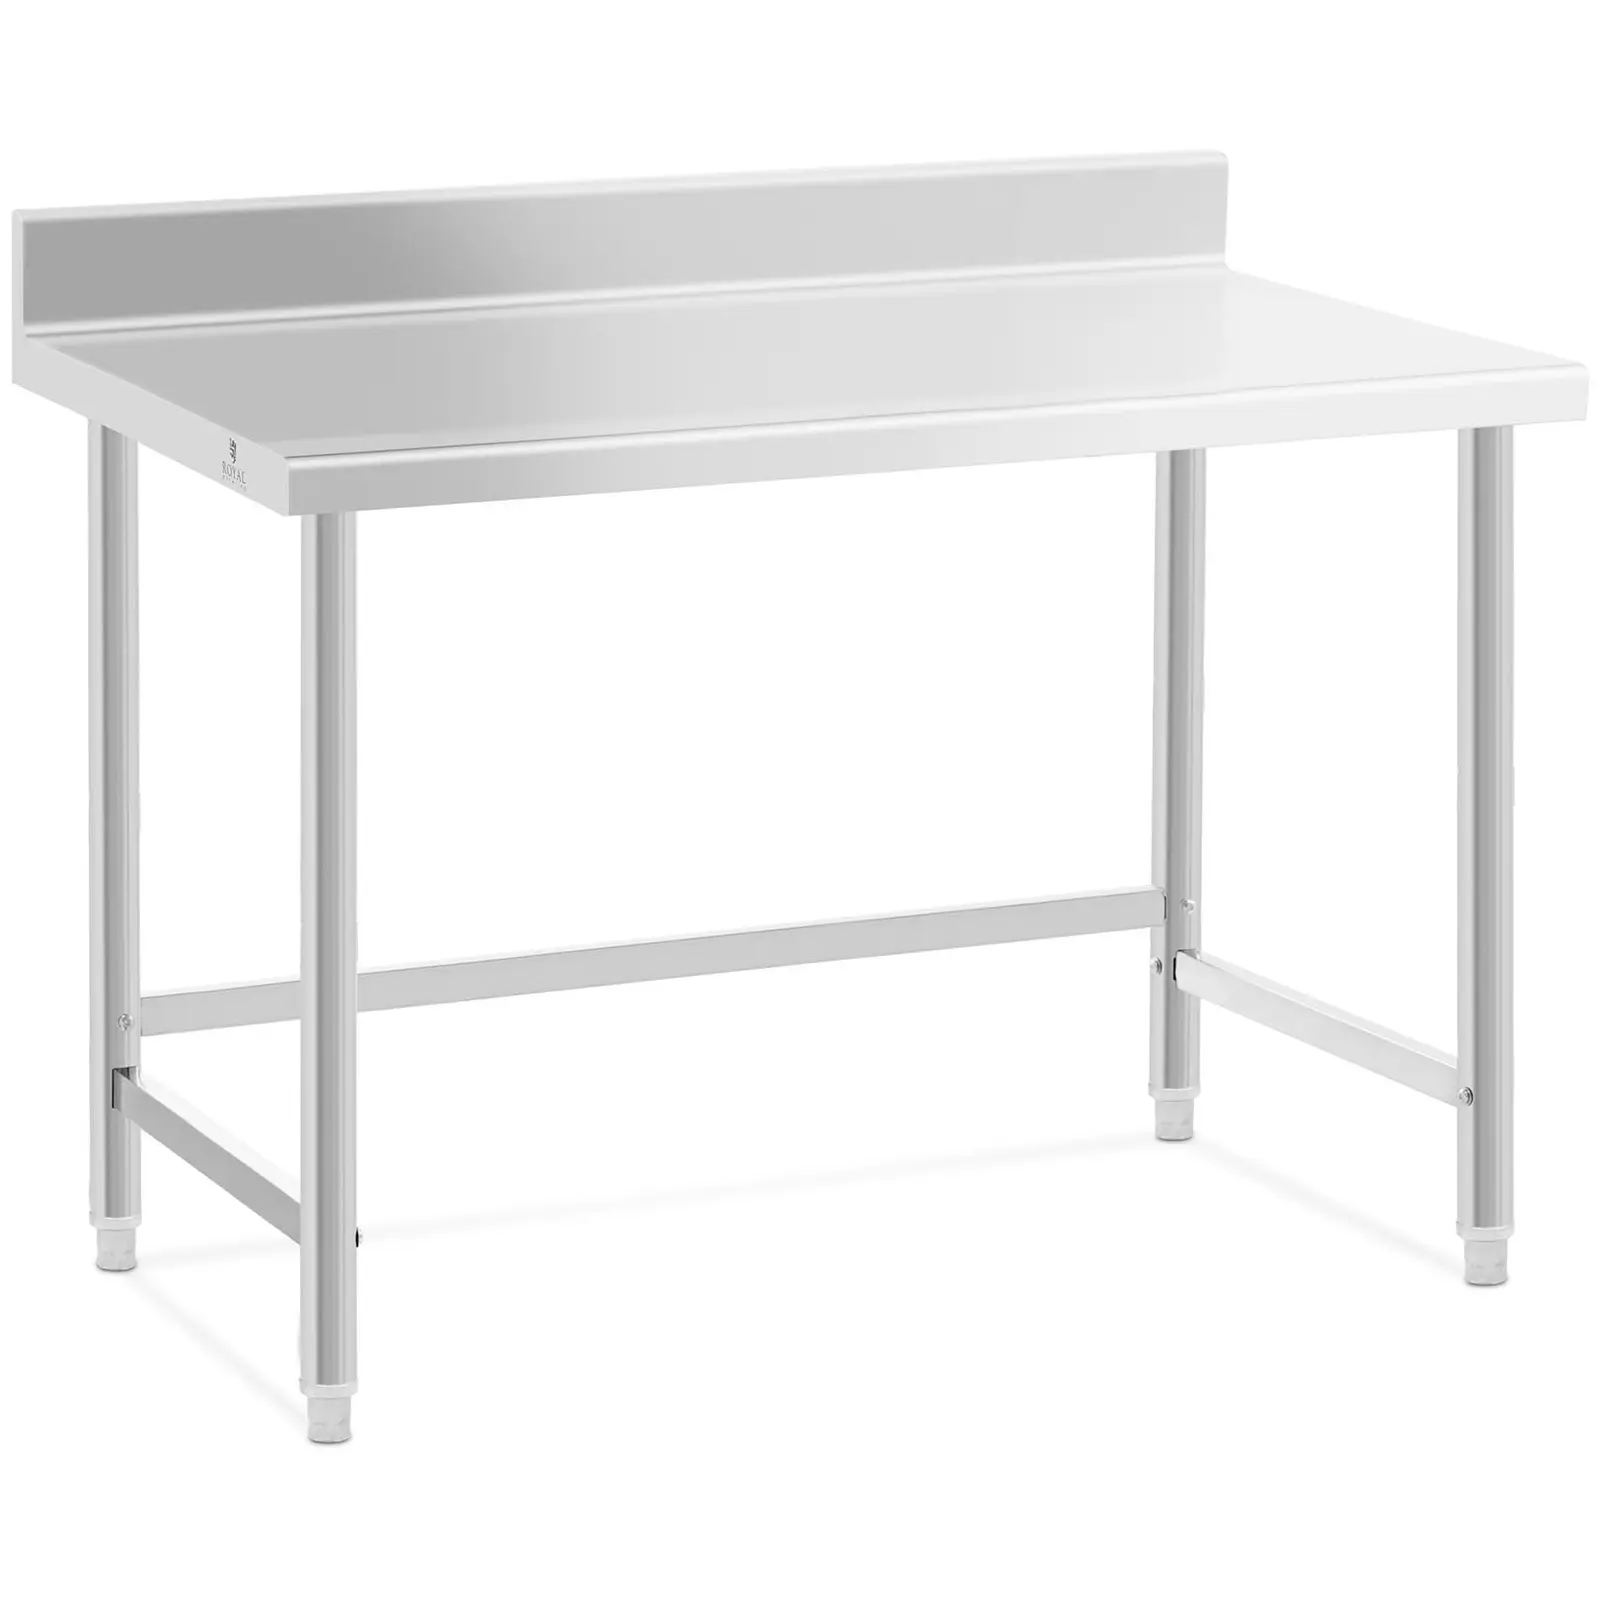 Pracovní stůl z ušlechtilé oceli 120 x 70 cm lem nosnost 93 kg - Pracovní stoly Royal Catering